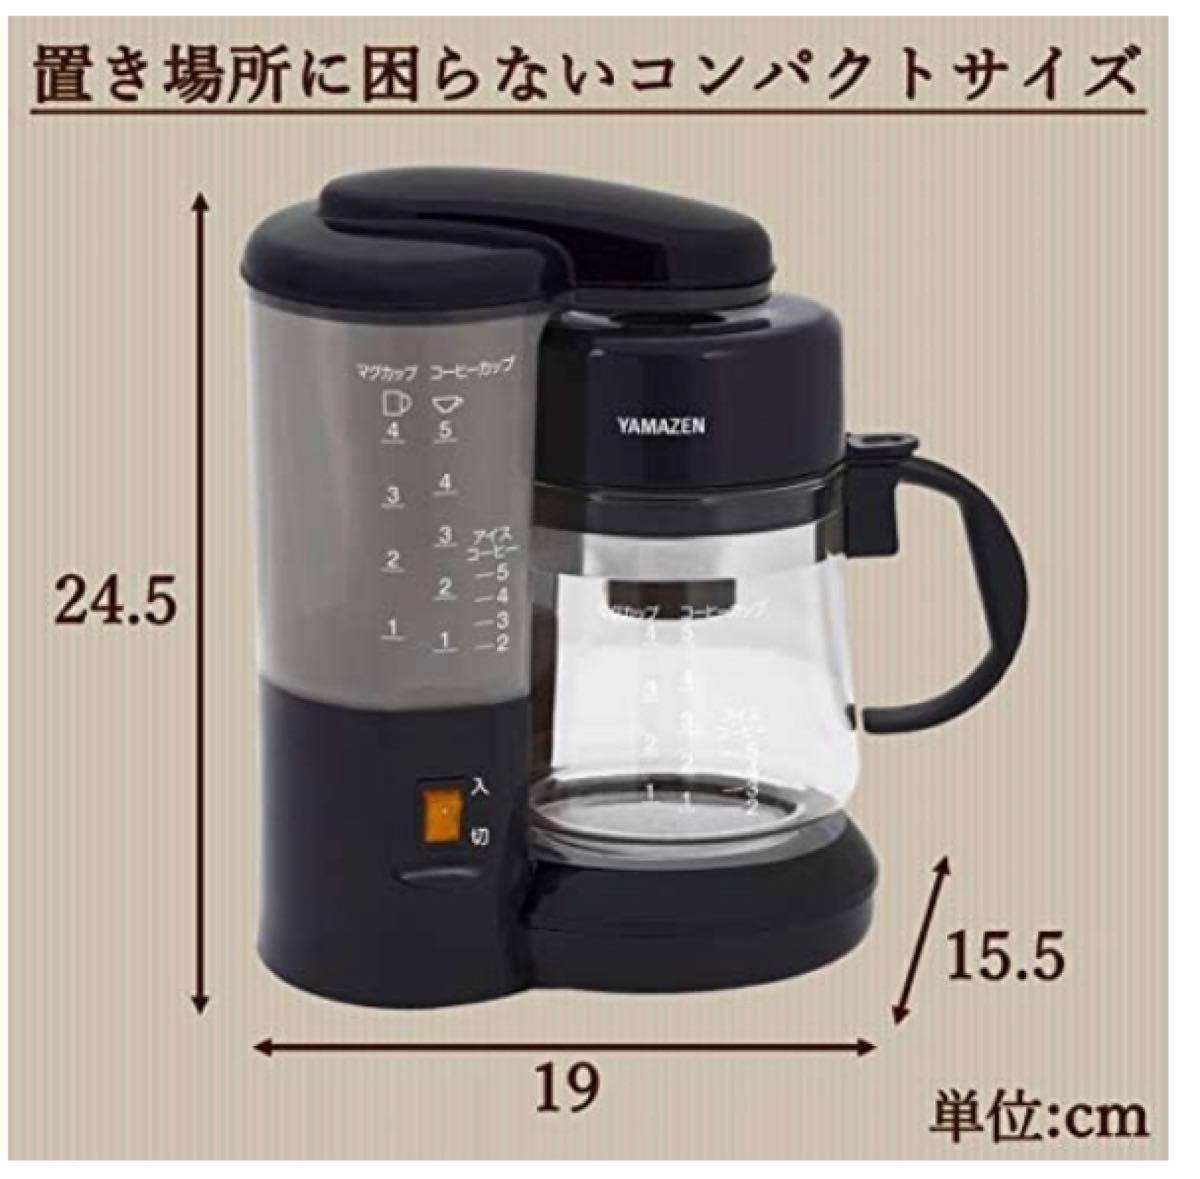 山善(YAMAZEN) コーヒーメーカー 650ml 5杯用 ドリップ式 アイスコーヒー ブラック YCA-501(B) 新品